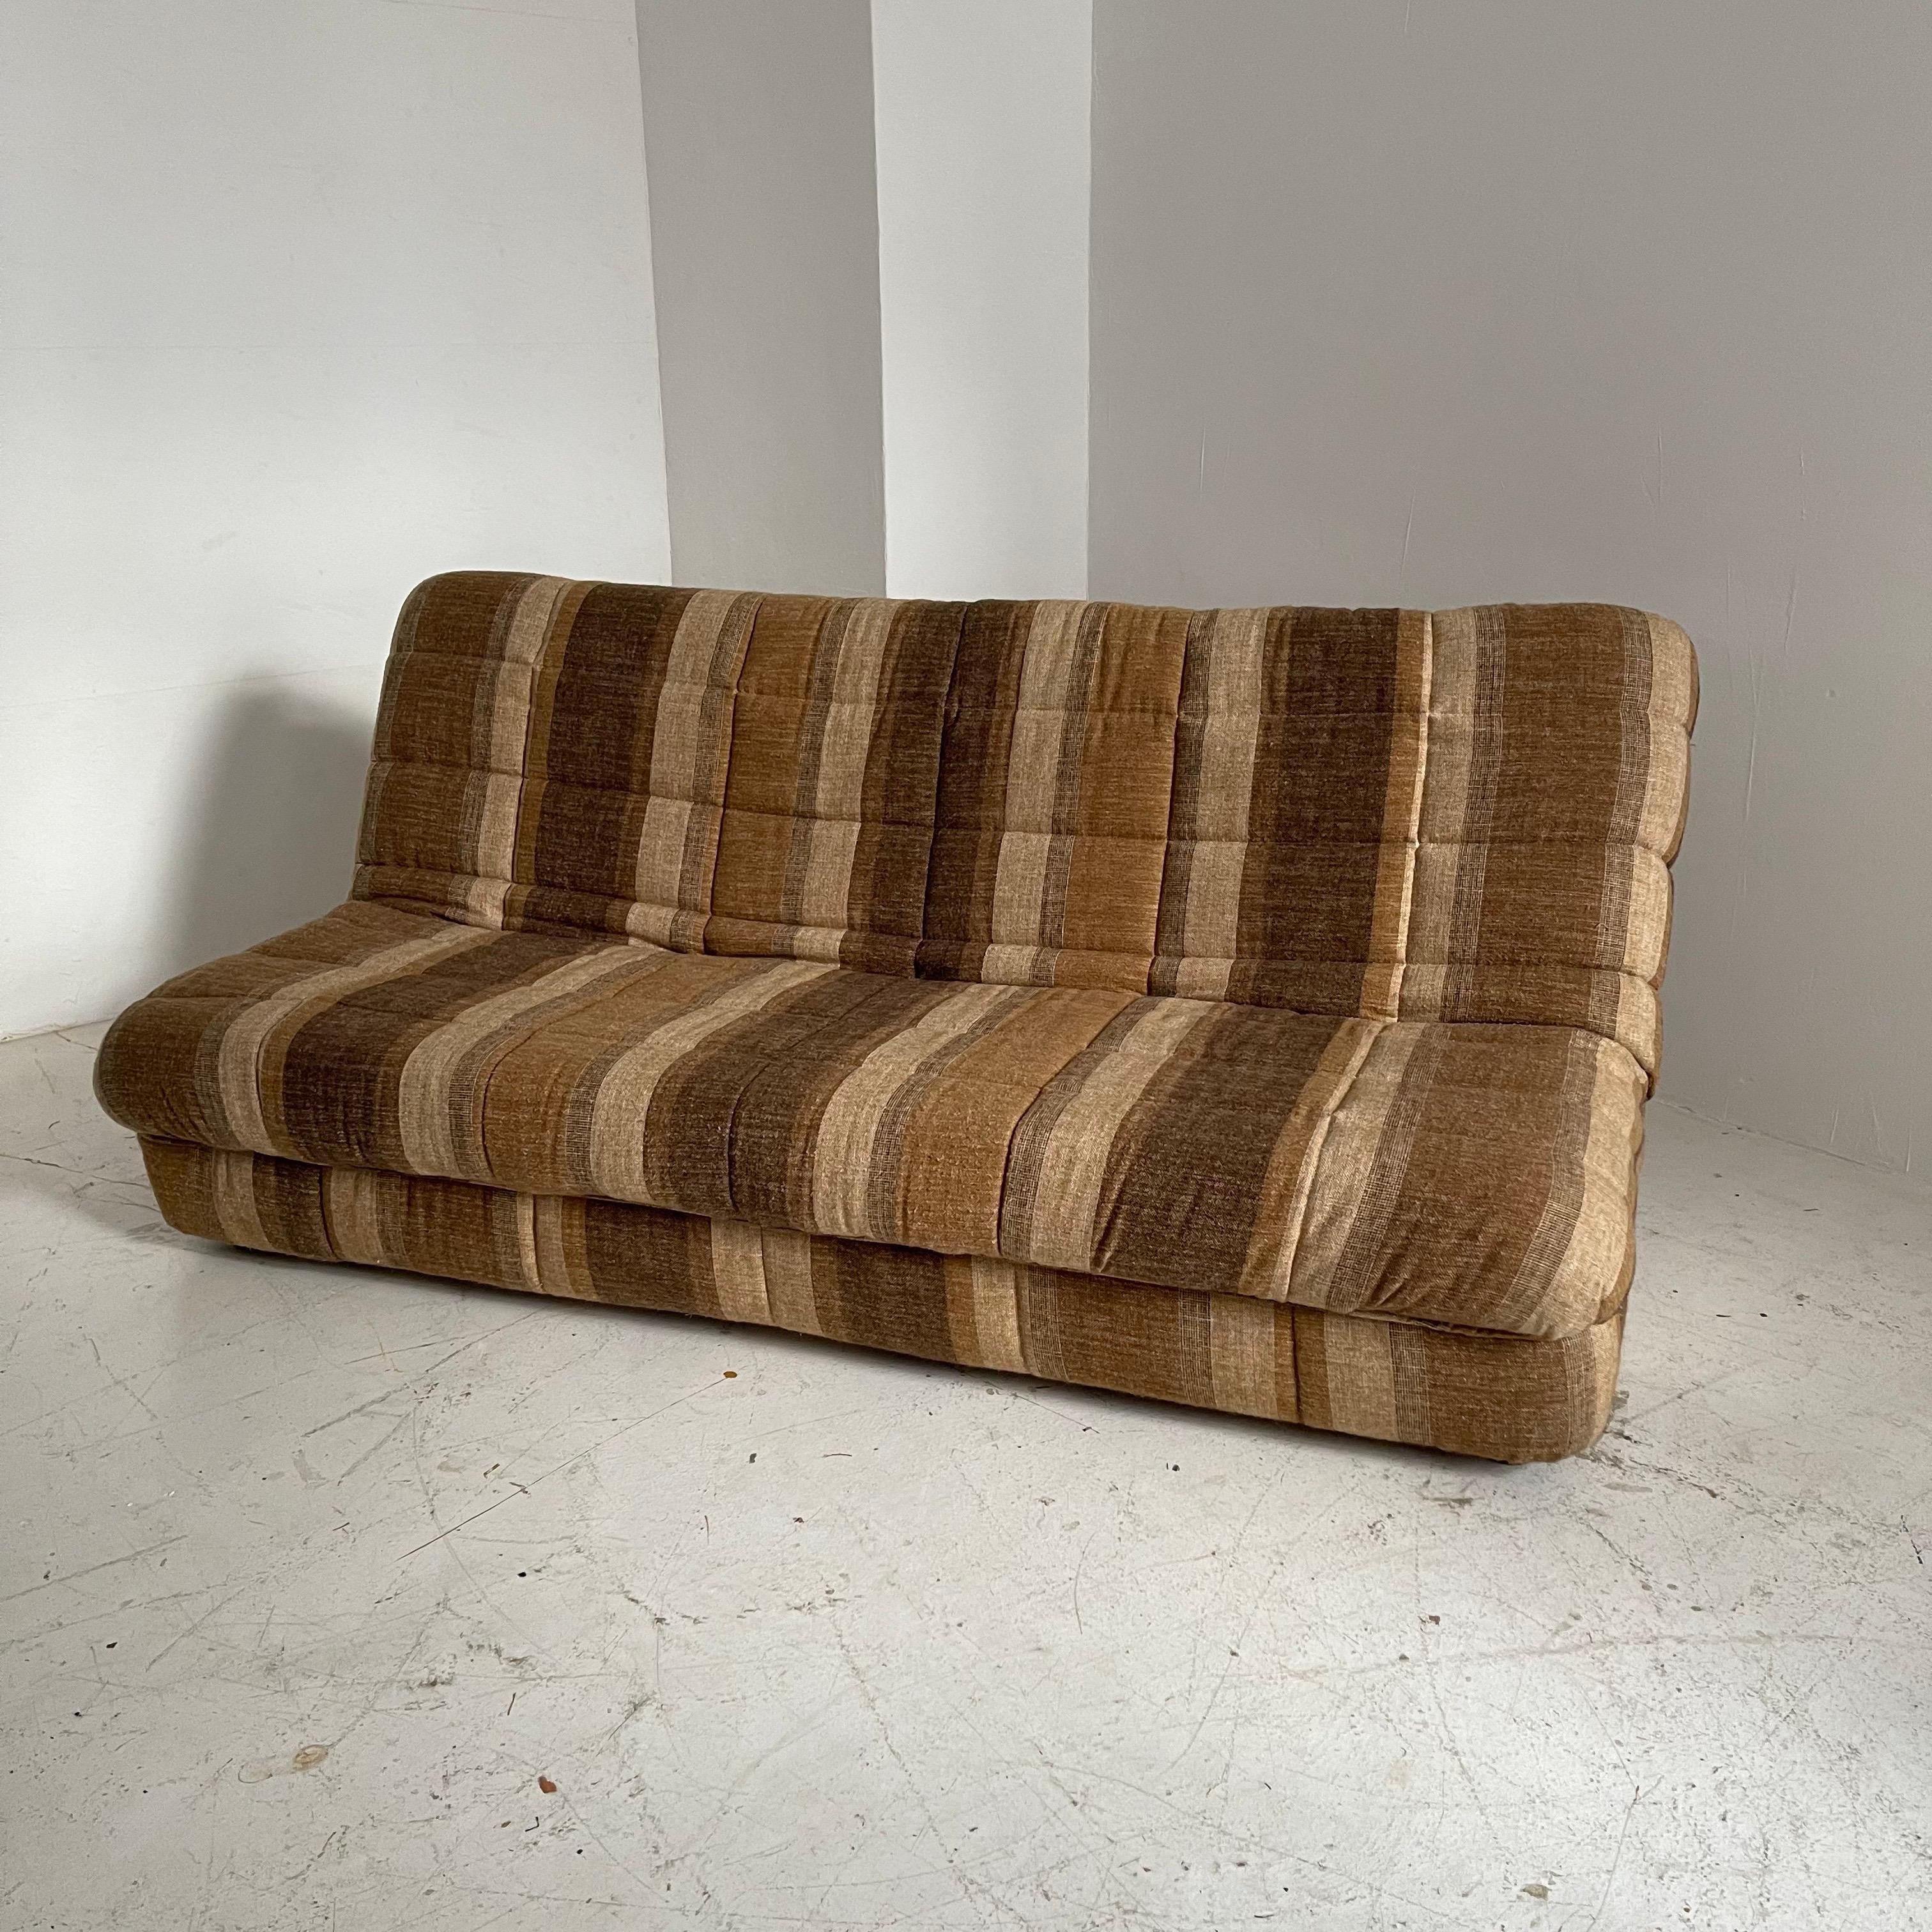 Cinna / Ligne Roset daybed sofa GAO design Jean Paul Laloy, France, 1975.